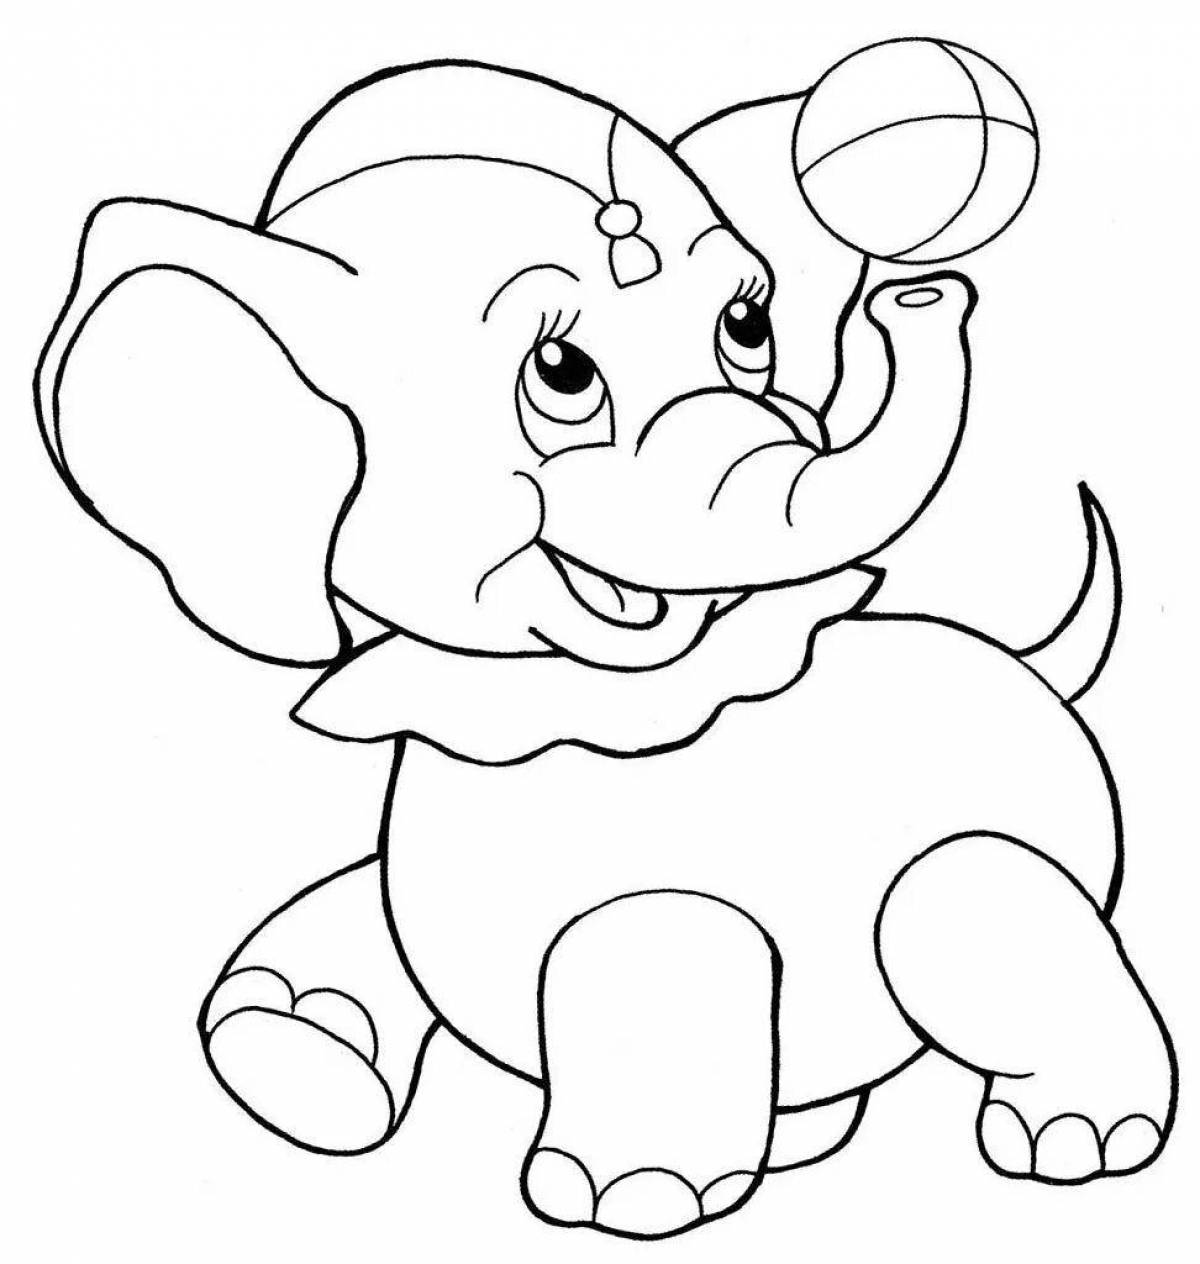 Очаровательная раскраска слона для детей 3-4 лет